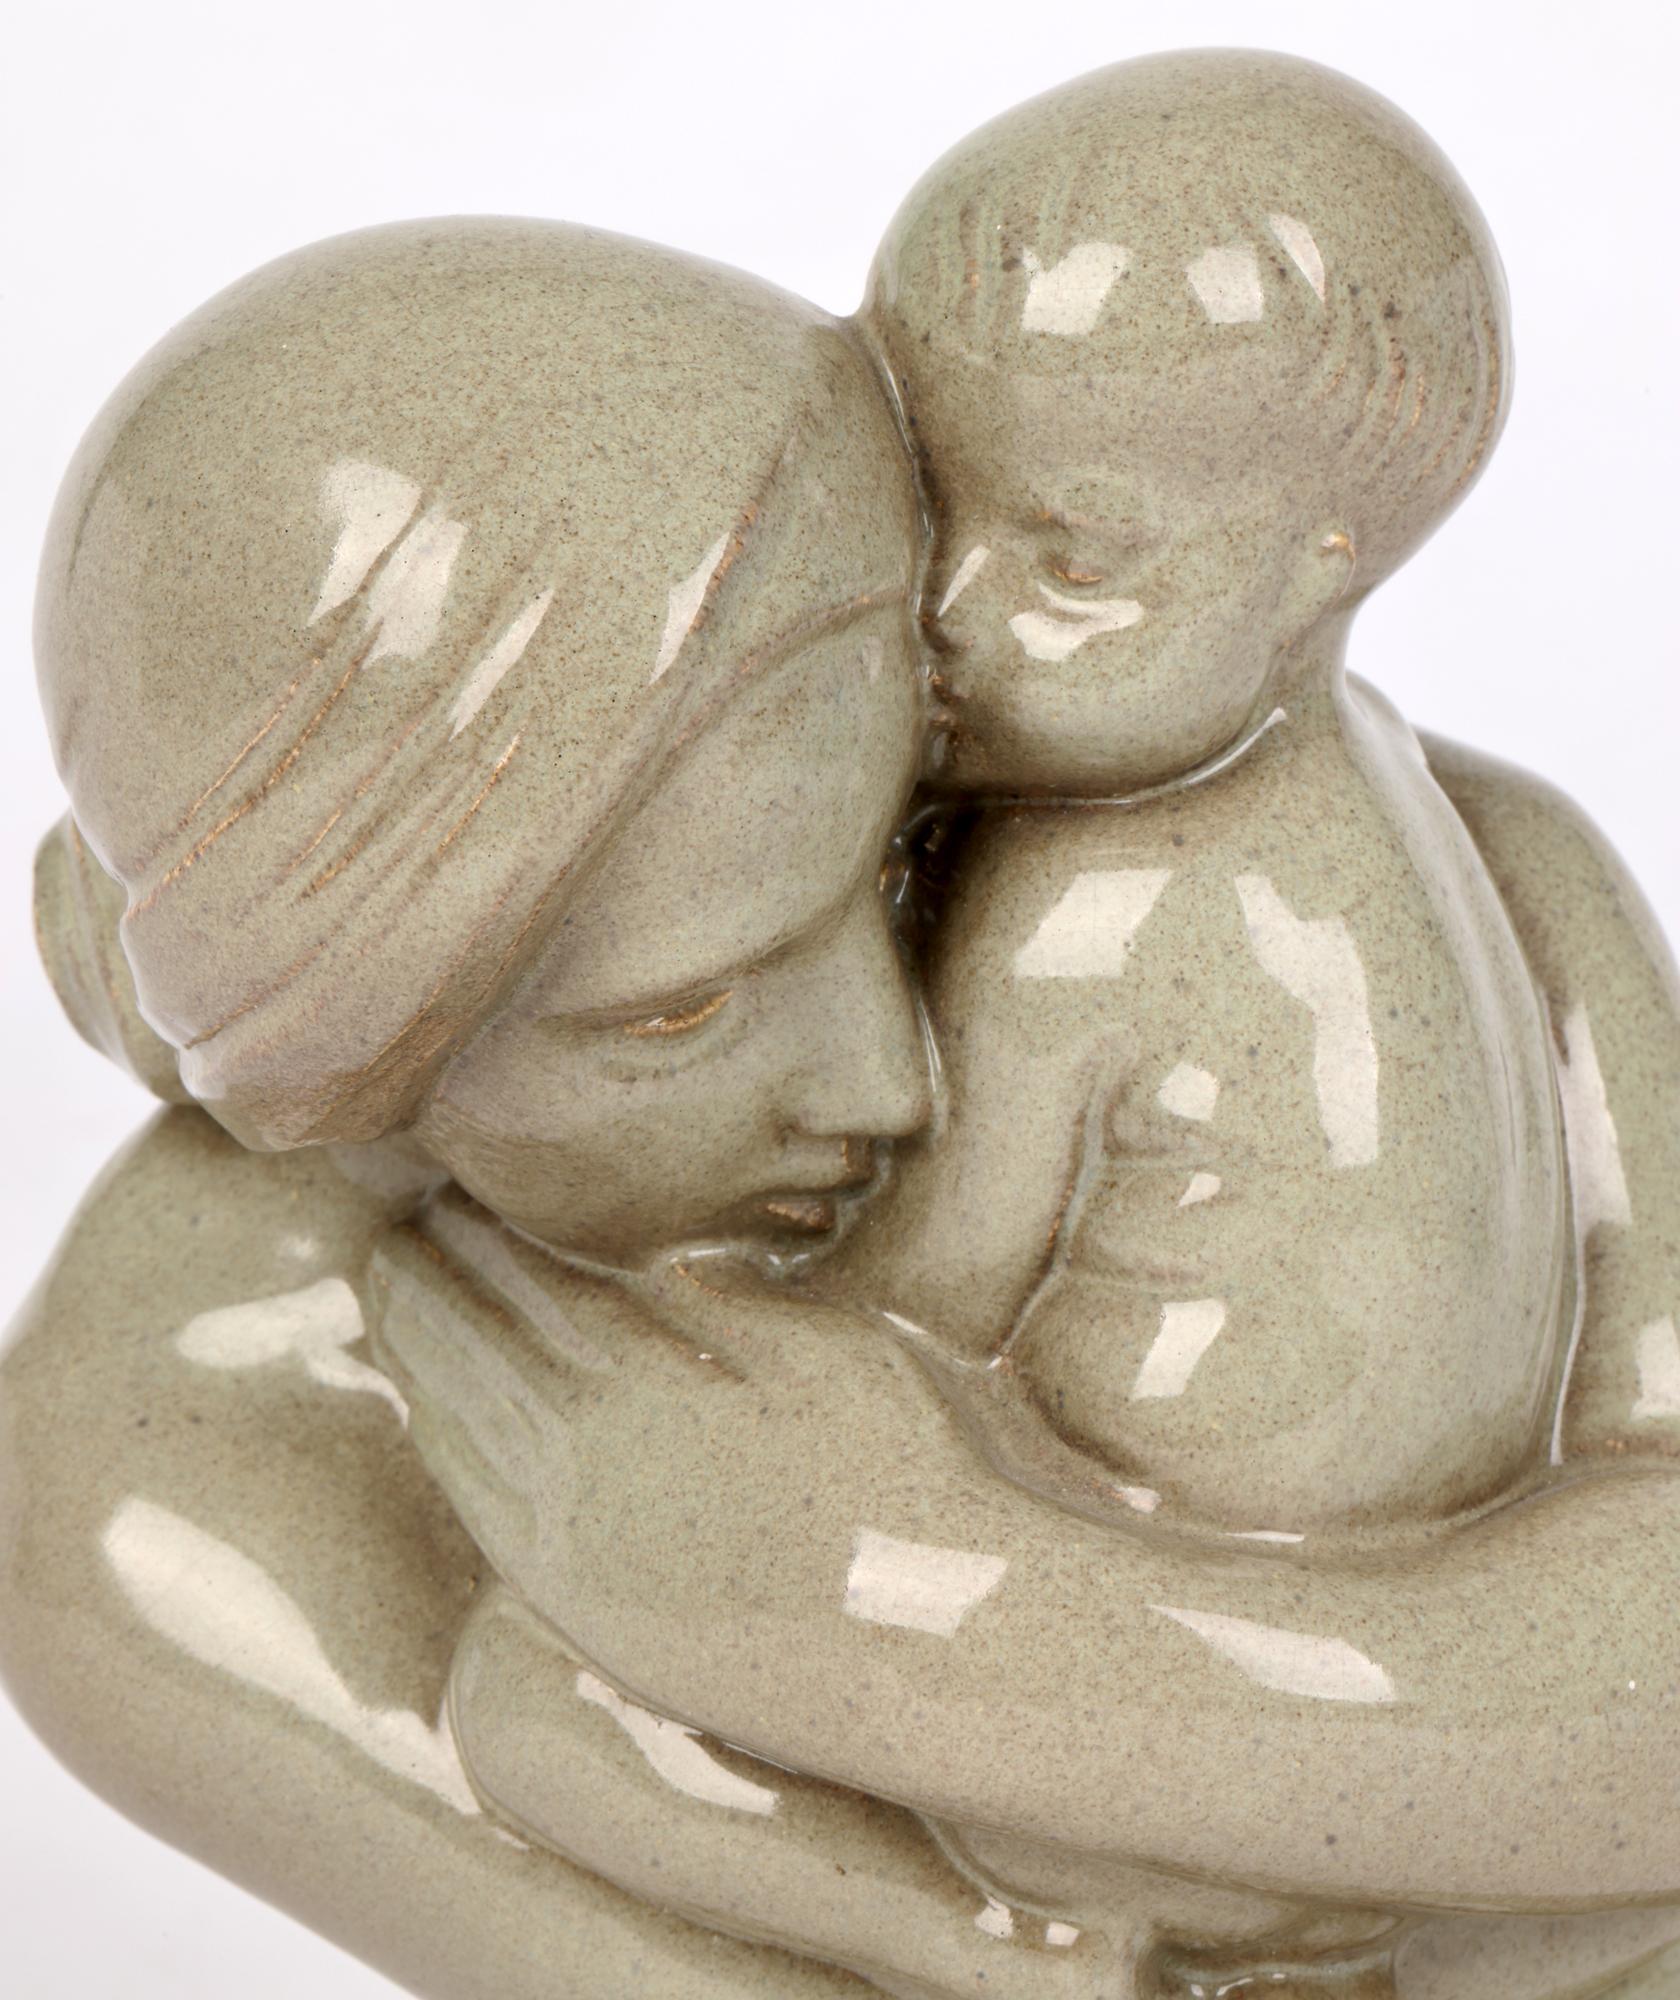 Magnifique sculpture en poterie Art déco représentant une mère et son enfant, réalisée par Christine Gregory (britannique, 1879-1965) et datée de 1933. Cette représentation très tendre et bien observée montre la mère tenant l'enfant enveloppé dans